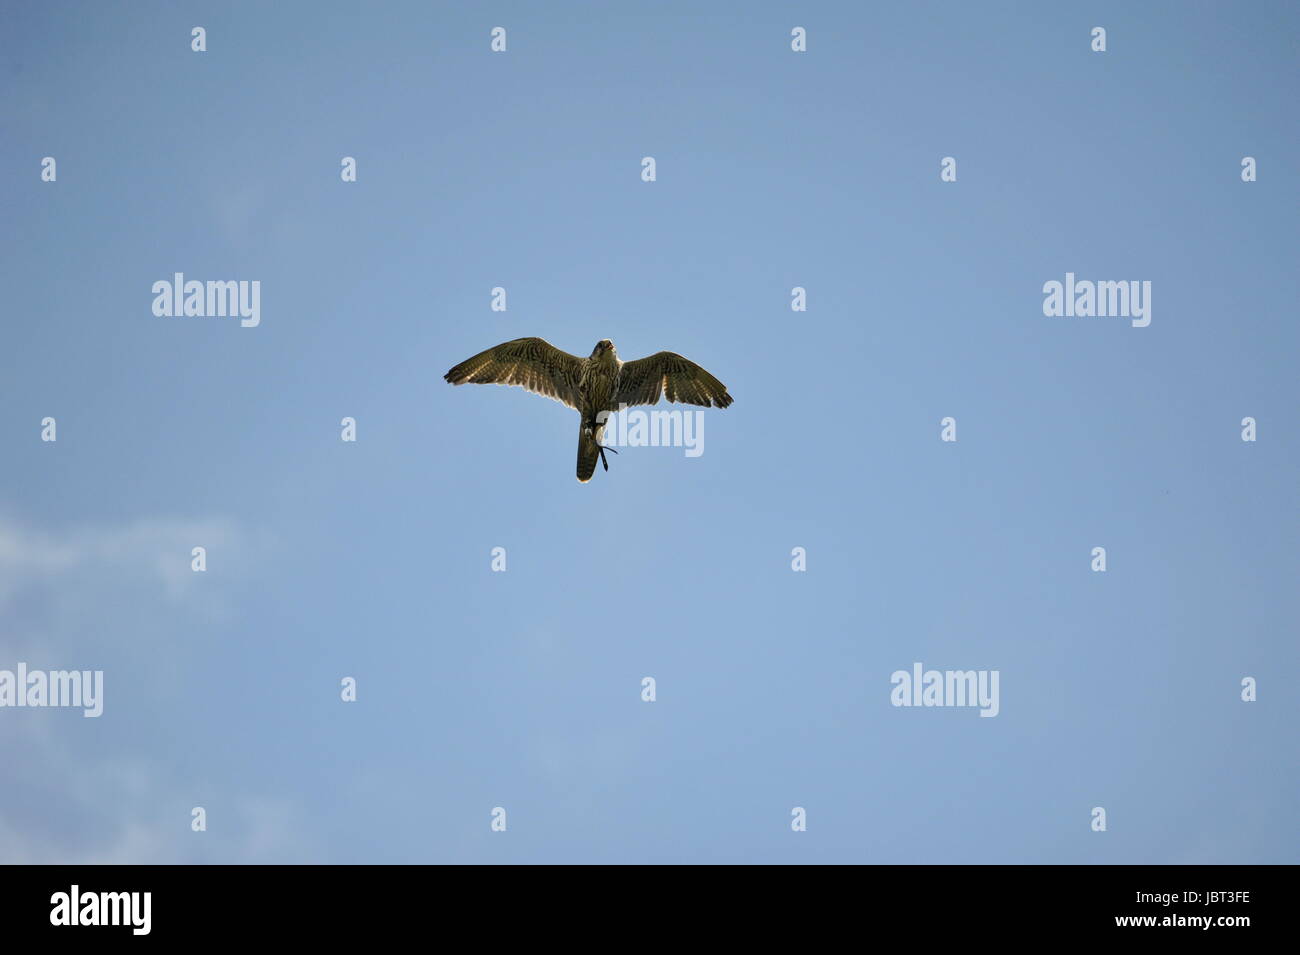 Peregrine falcon (Falco peregrinus) in fly Stock Photo